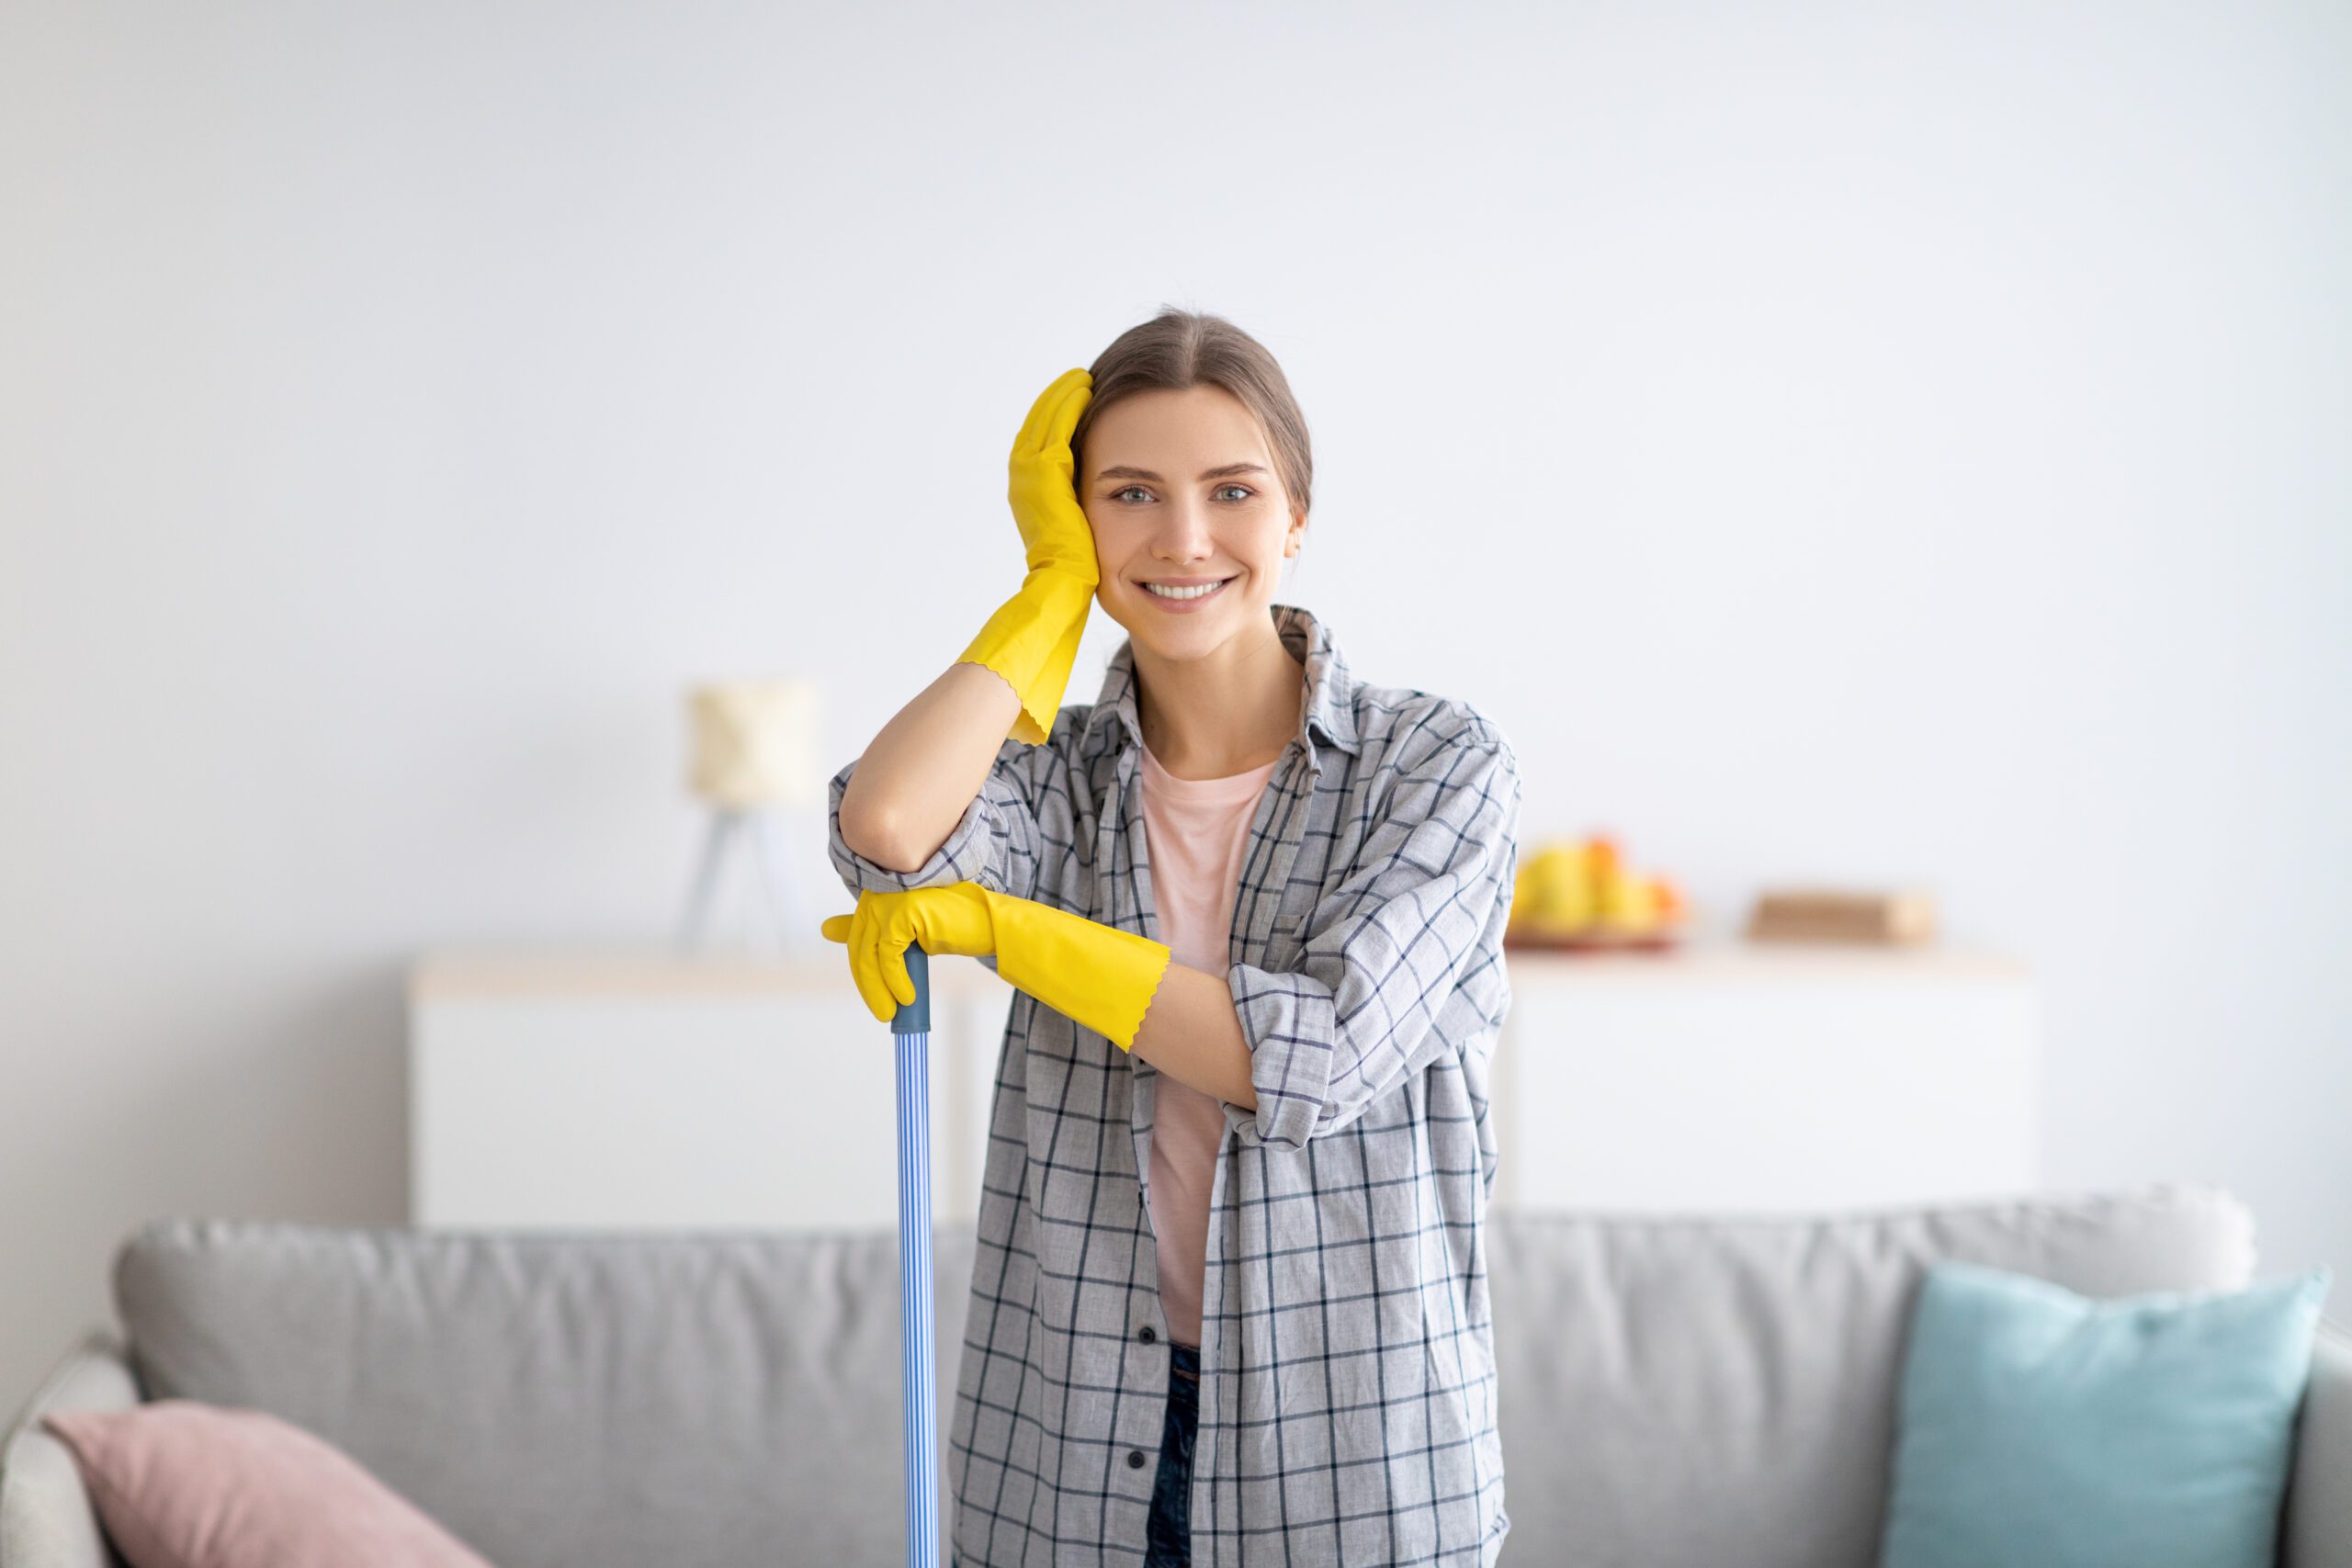 Profesjonalna pani sprzątająca oferuje usługi sprzątania mieszkania i utrzymania porządku w domu i mieszkaniu.